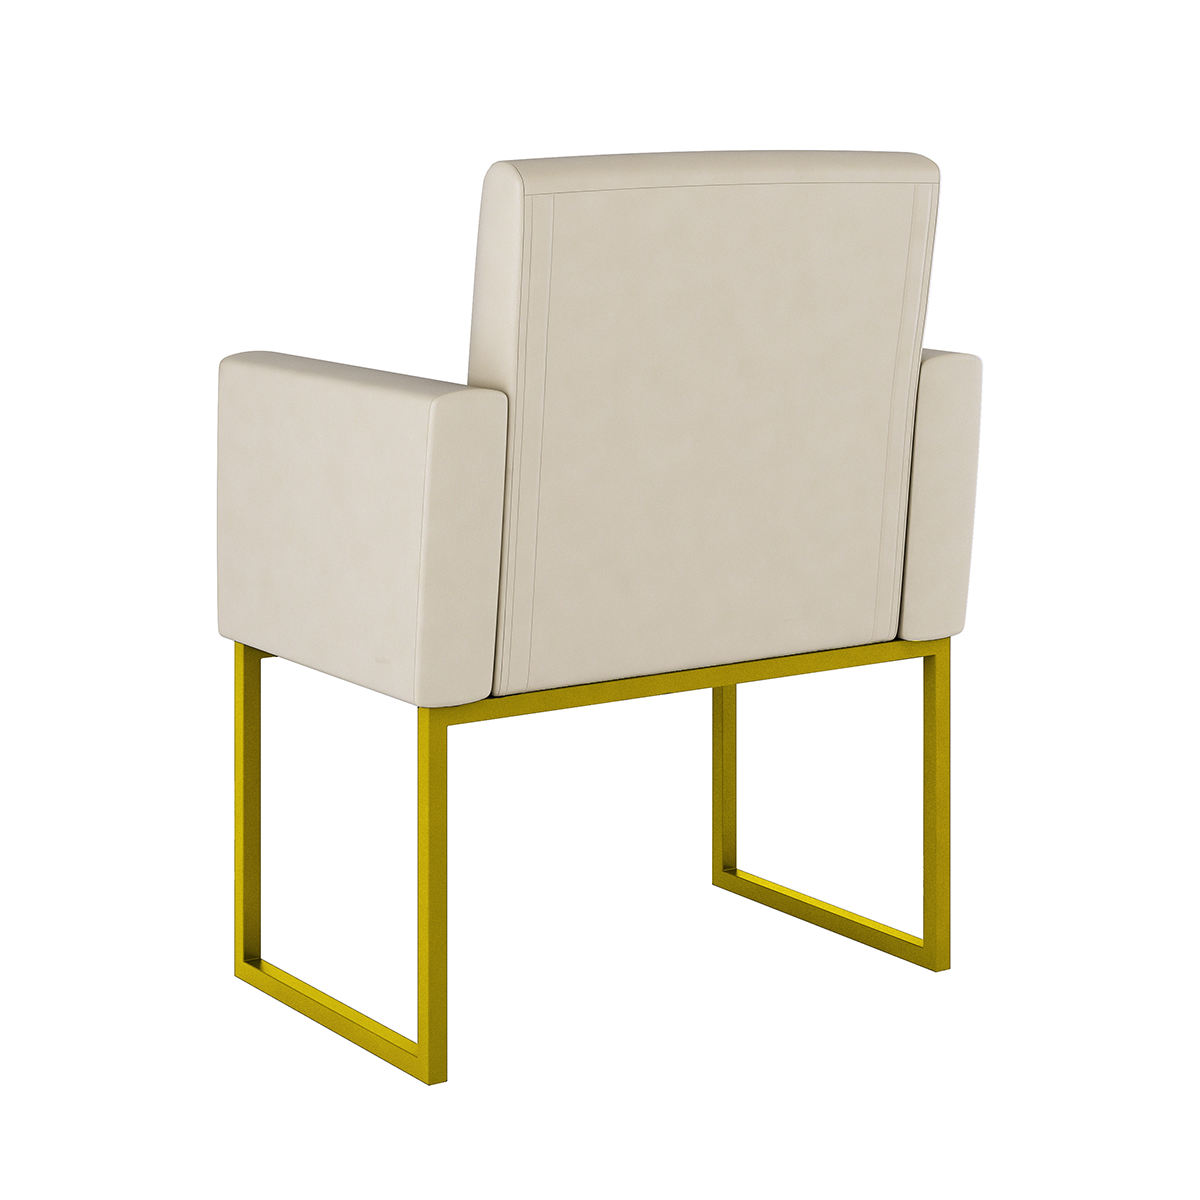 Poltrona Cadeira Decorativa Recepção Base de Ferro Dourada:courino Bege - 3